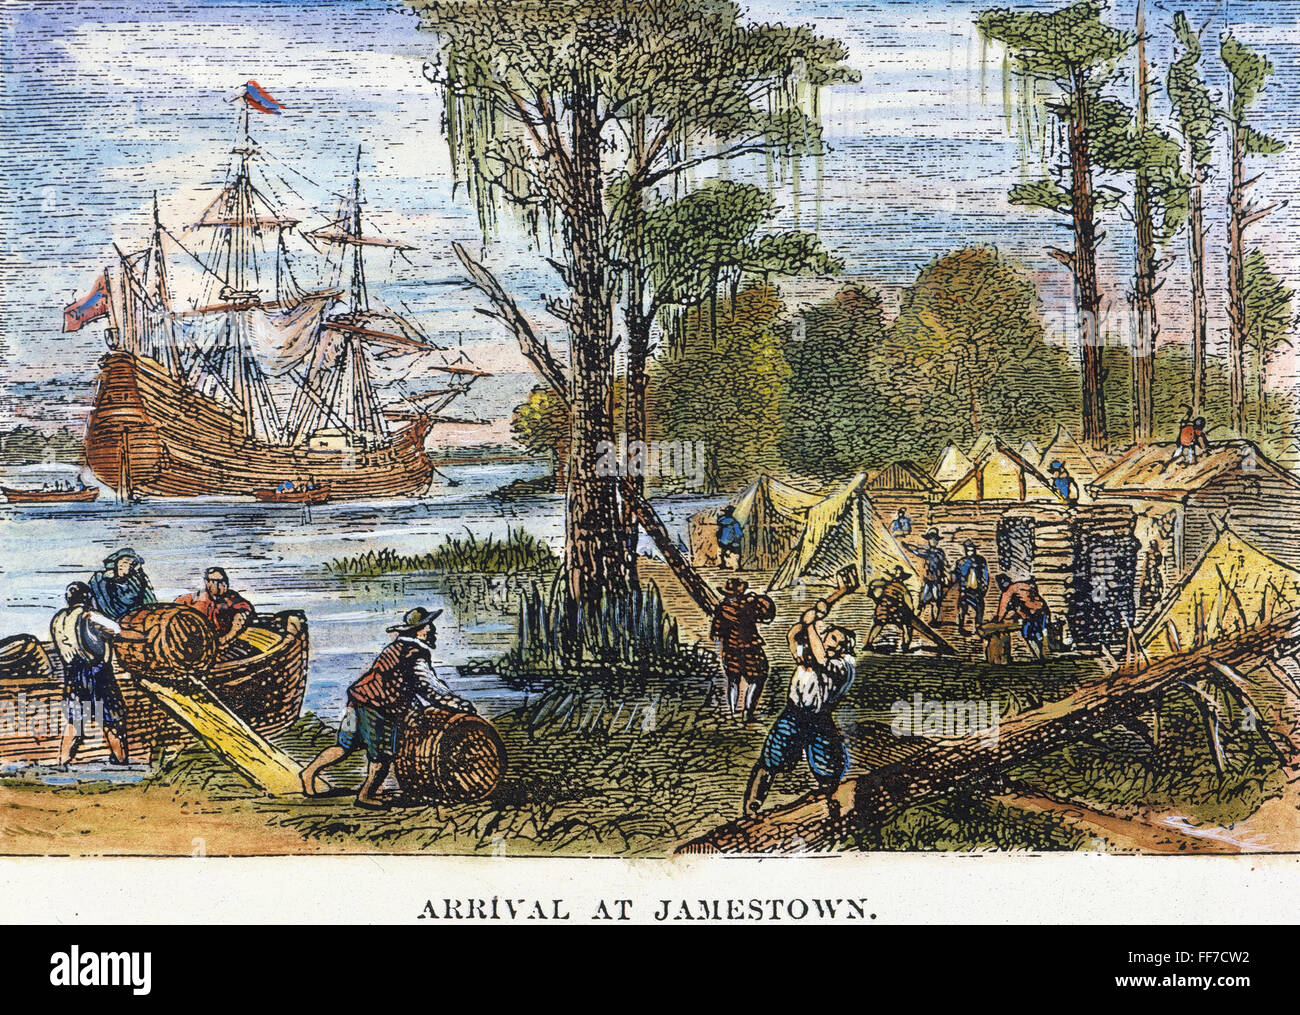 Arriving in may. Первые поселенцы в Америке 1620. Первое поселение Англии в Вирджинии — Джеймстаун.. 1607 Г. – основано первое Британское поселение – Джеймстаун..